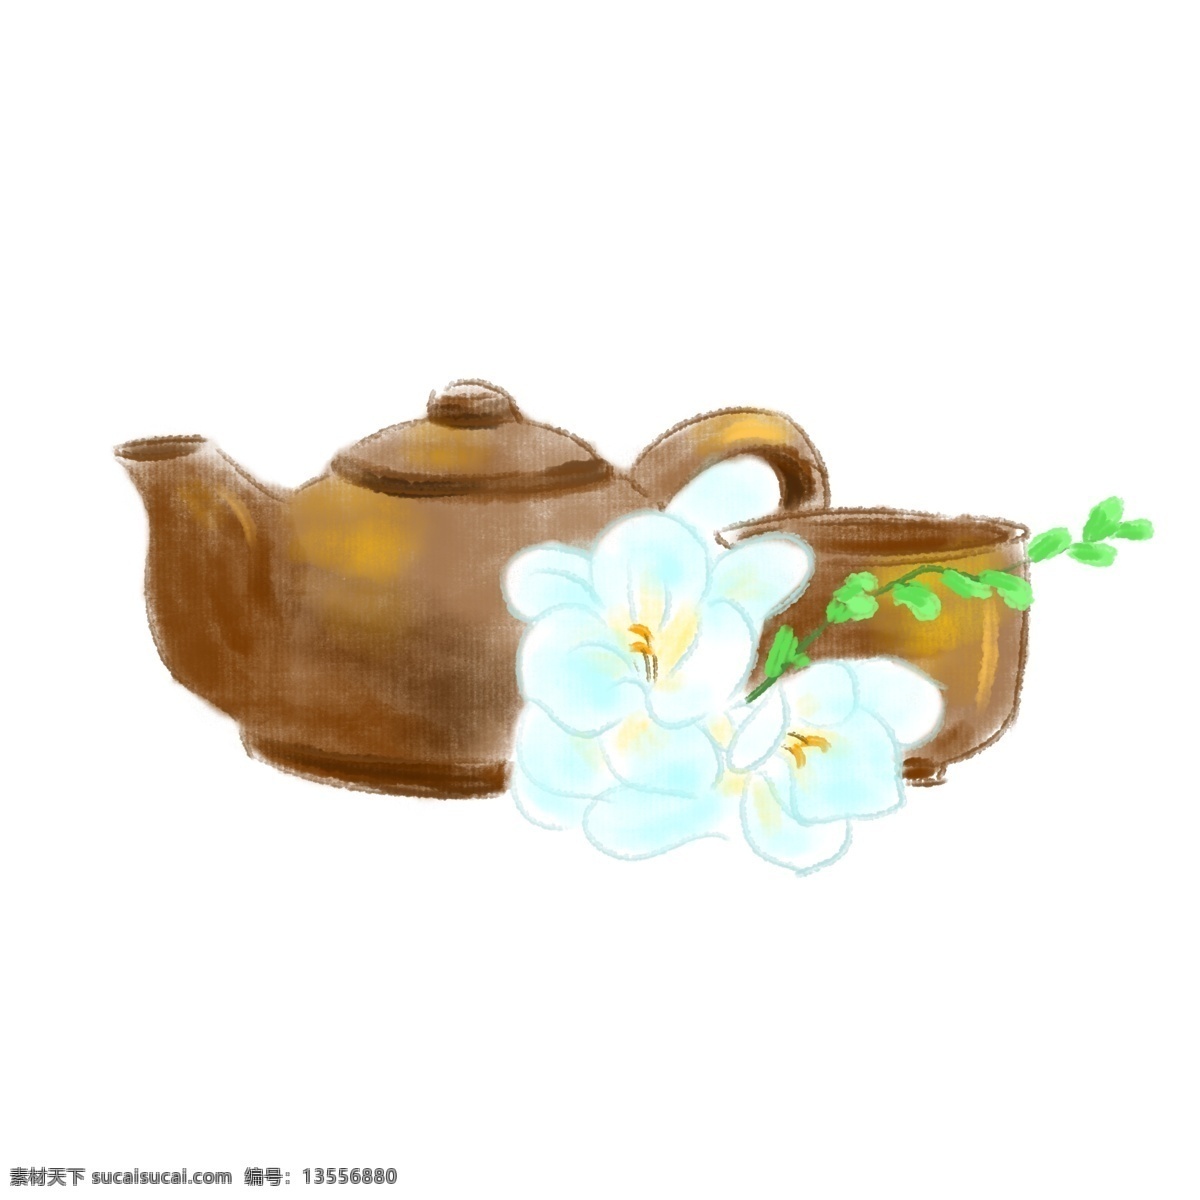 水墨 棕色 茶具 插画 水墨画 品茶 喝茶 花茶 绿叶 水墨茶壶 水墨茶具插画 棕色的茶壶 棕色茶盅 蓝白色的花朵